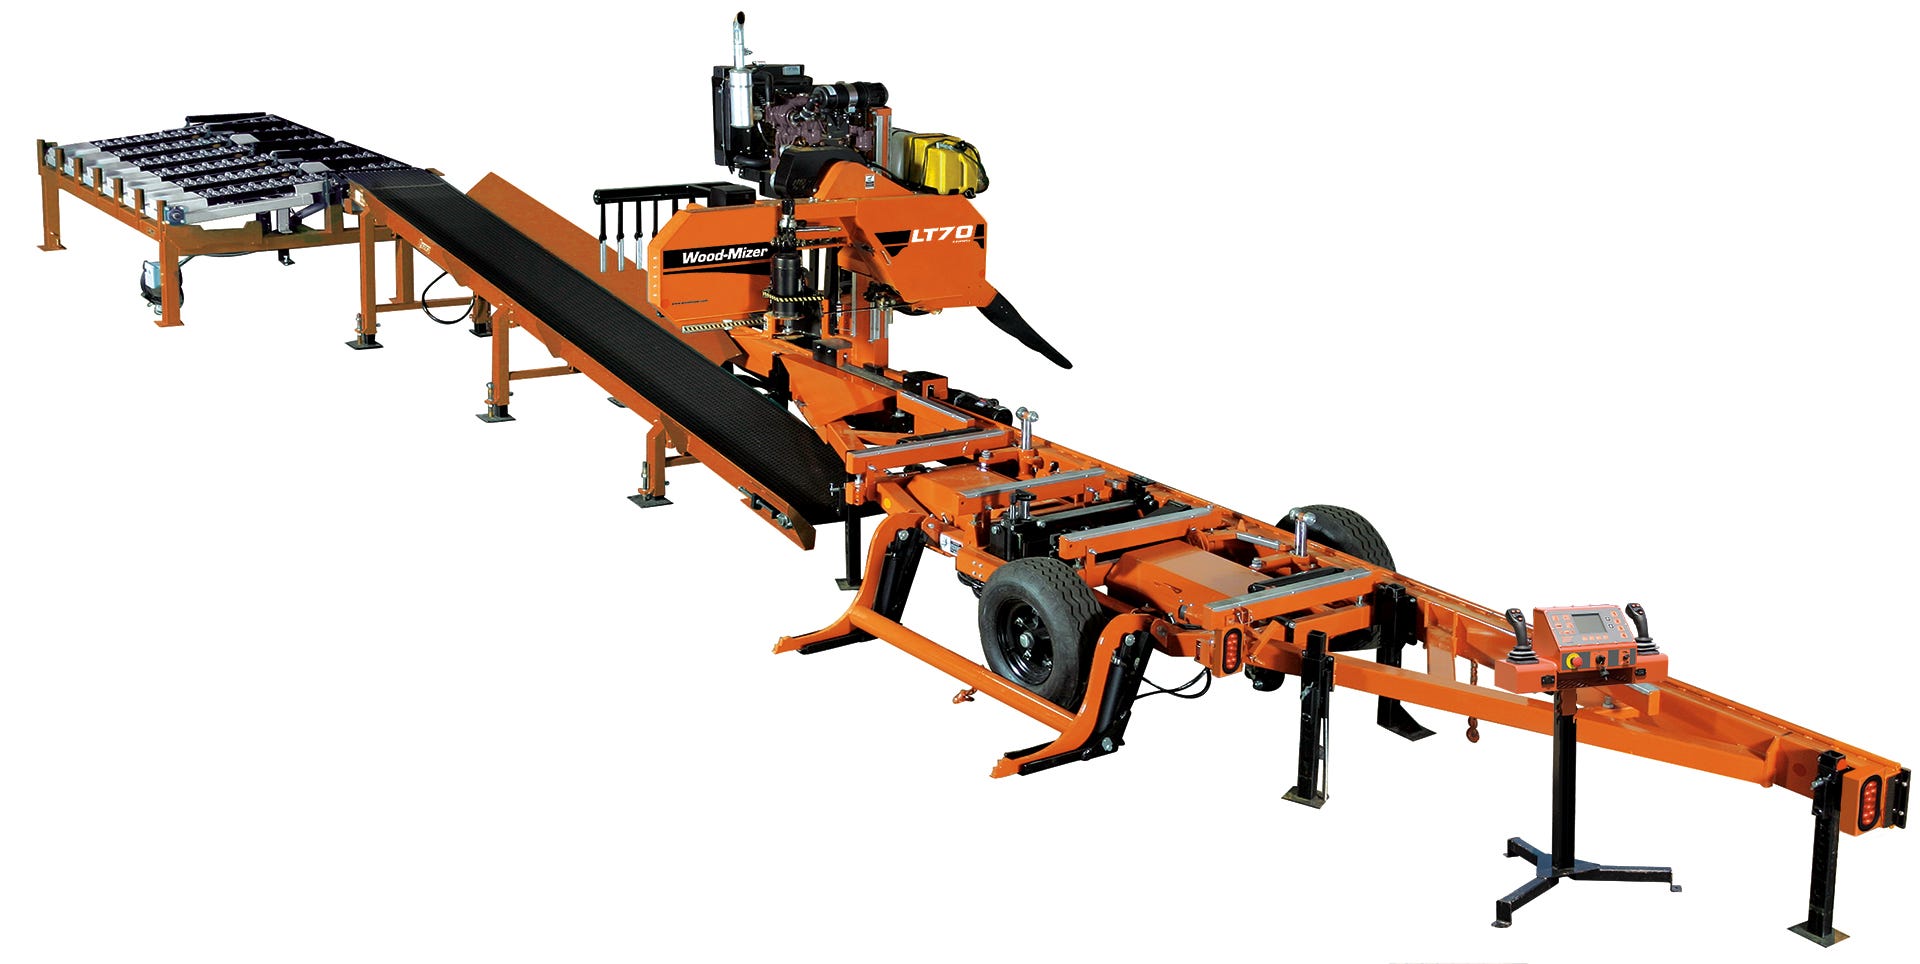 Wood-Mizer LT70 Remote Sawmill System